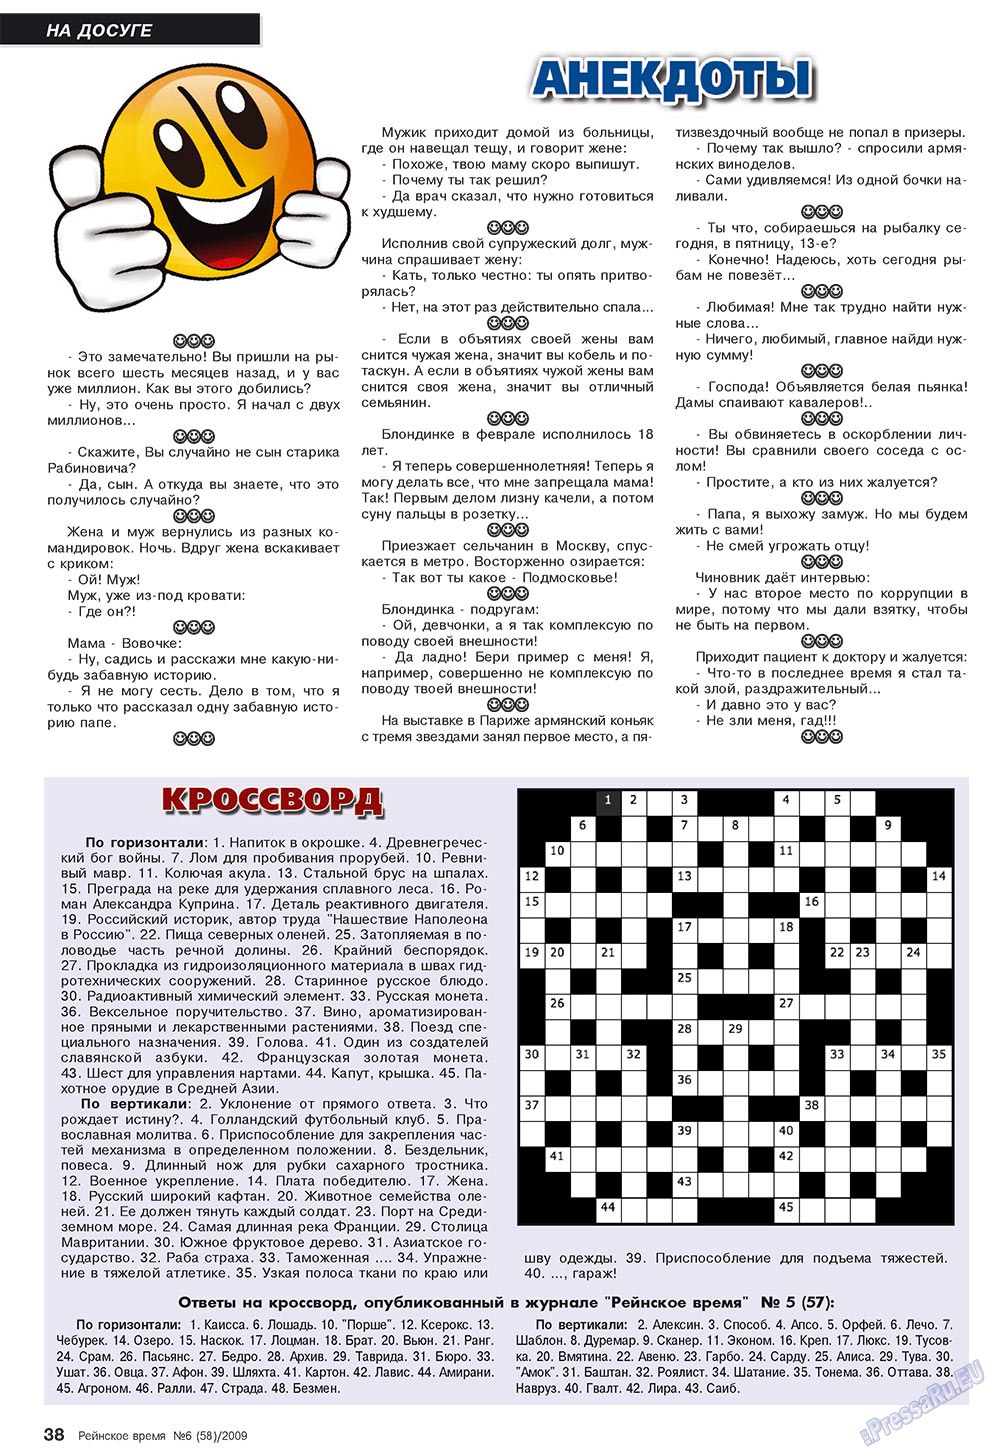 Рейнское время, журнал. 2009 №6 стр.38